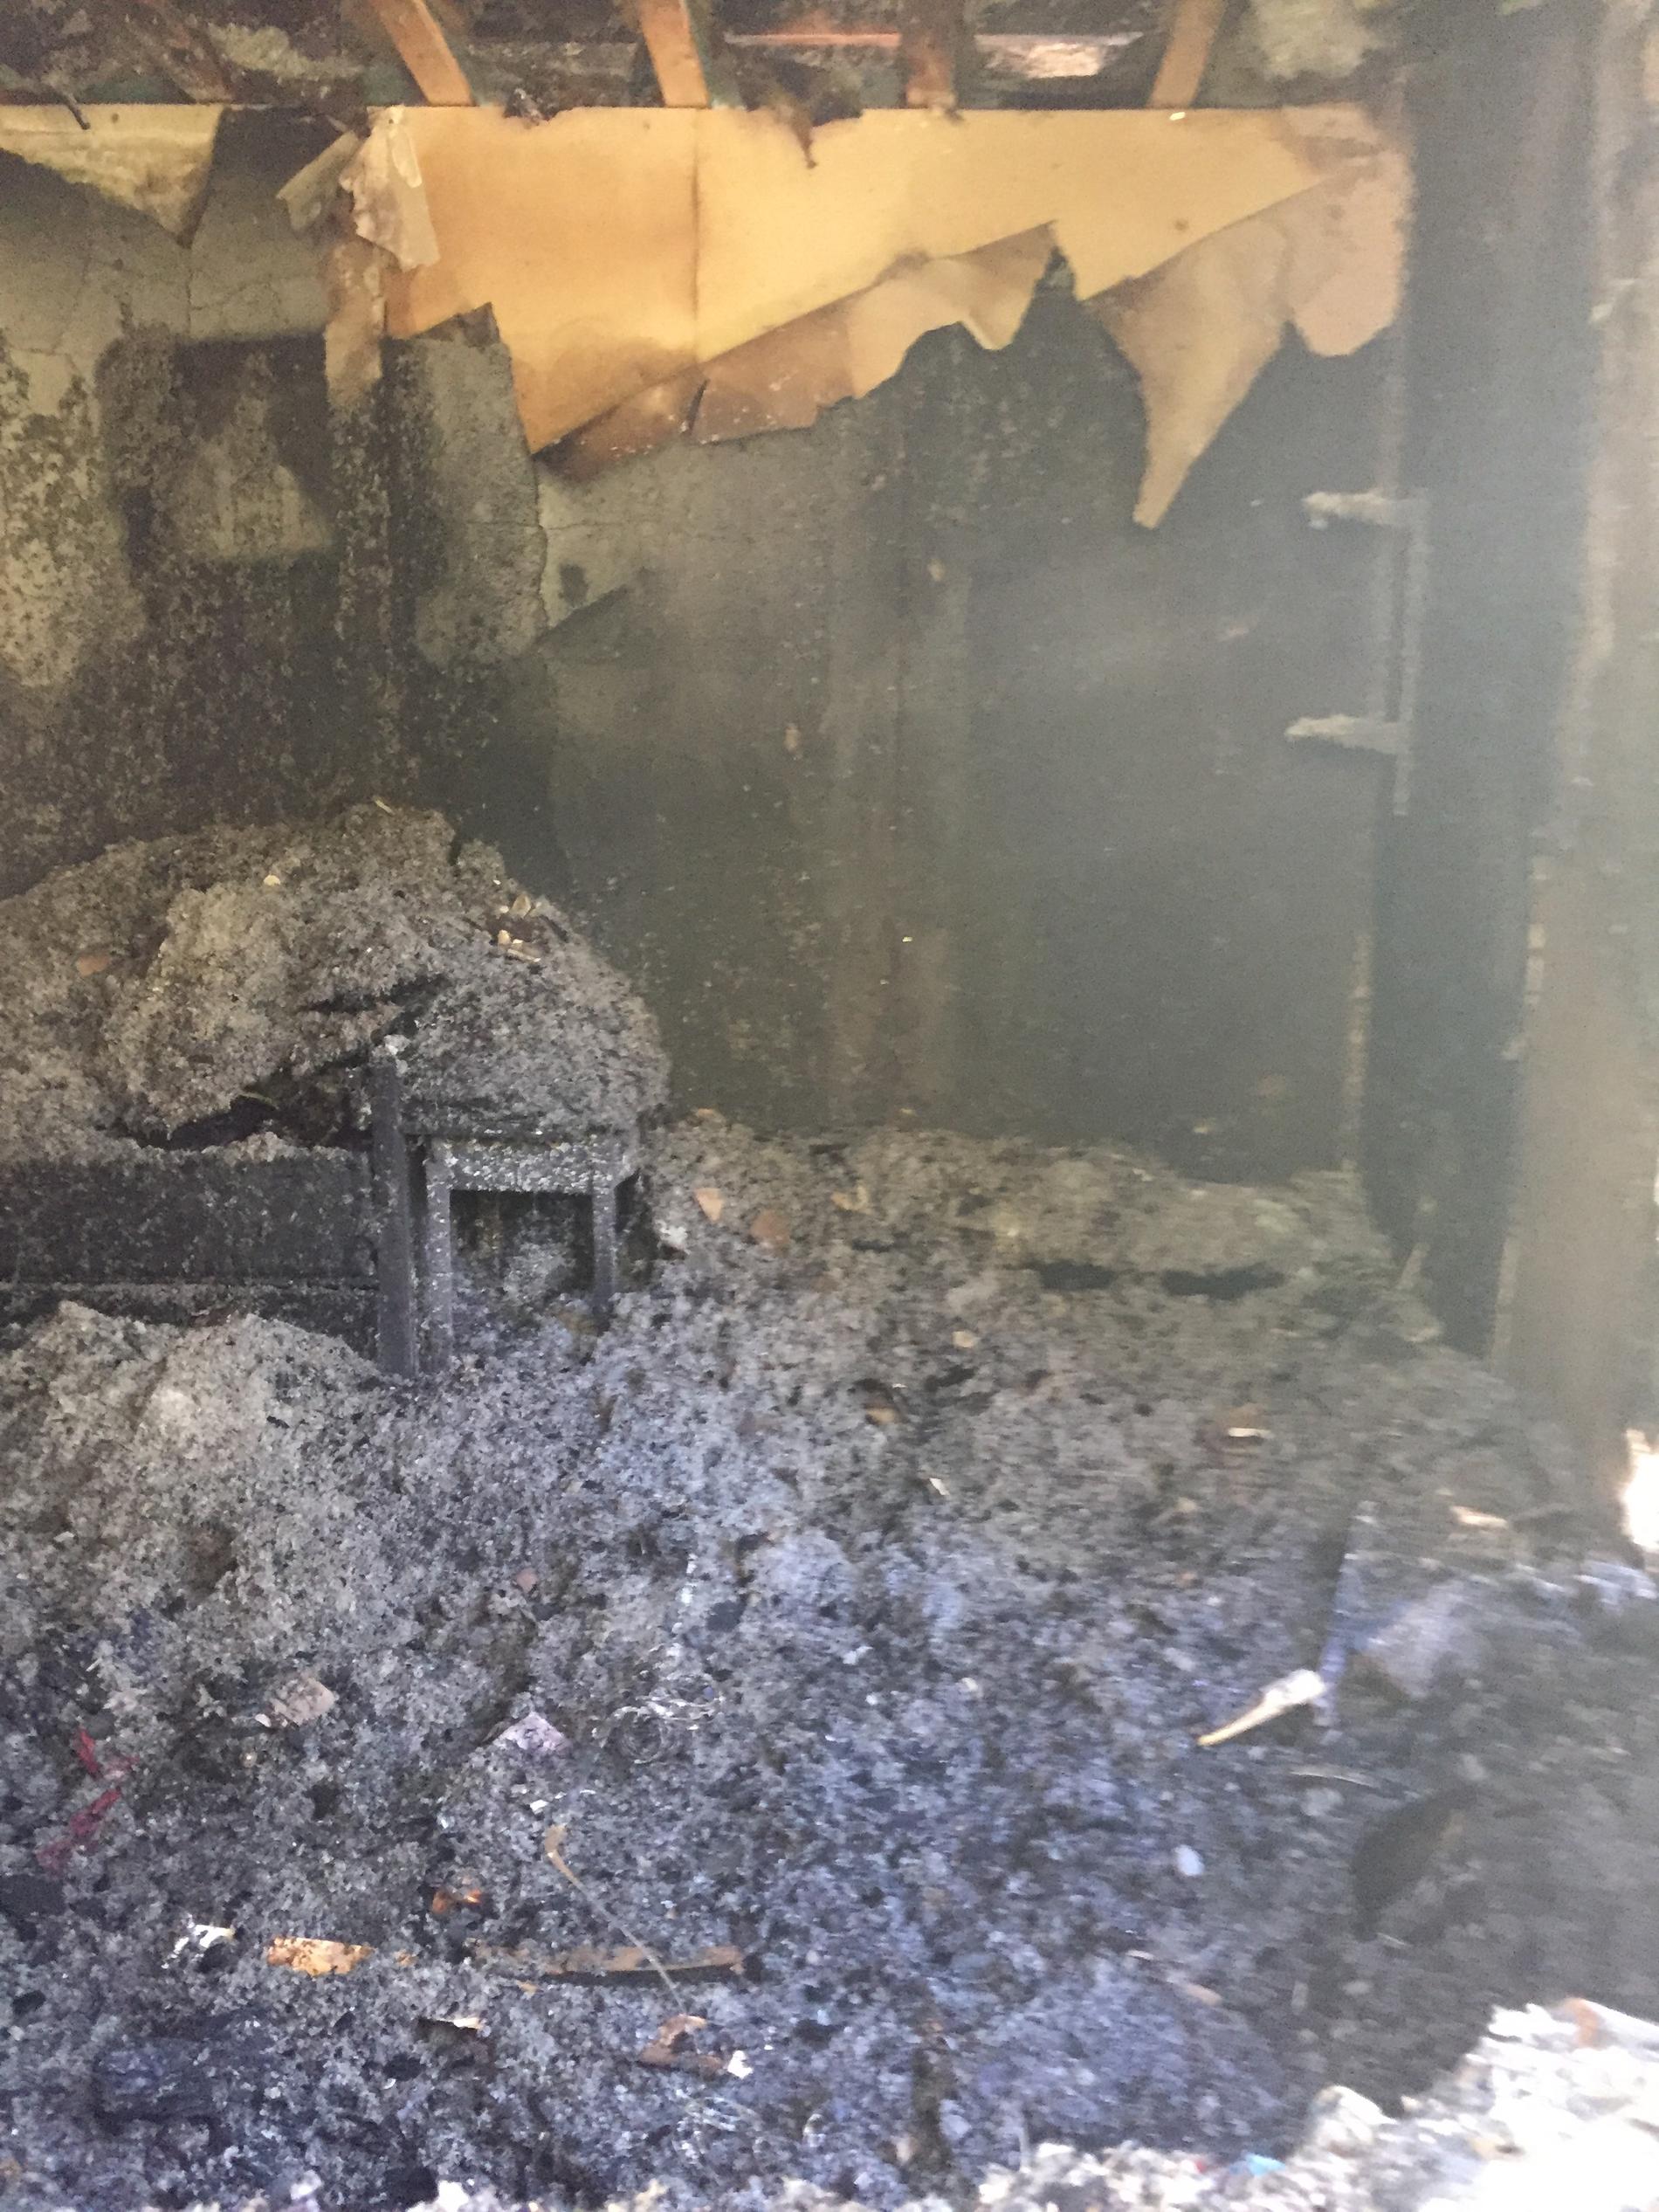 Så här ser dotterns rum ut efter branden som spred sig till resten av huset.